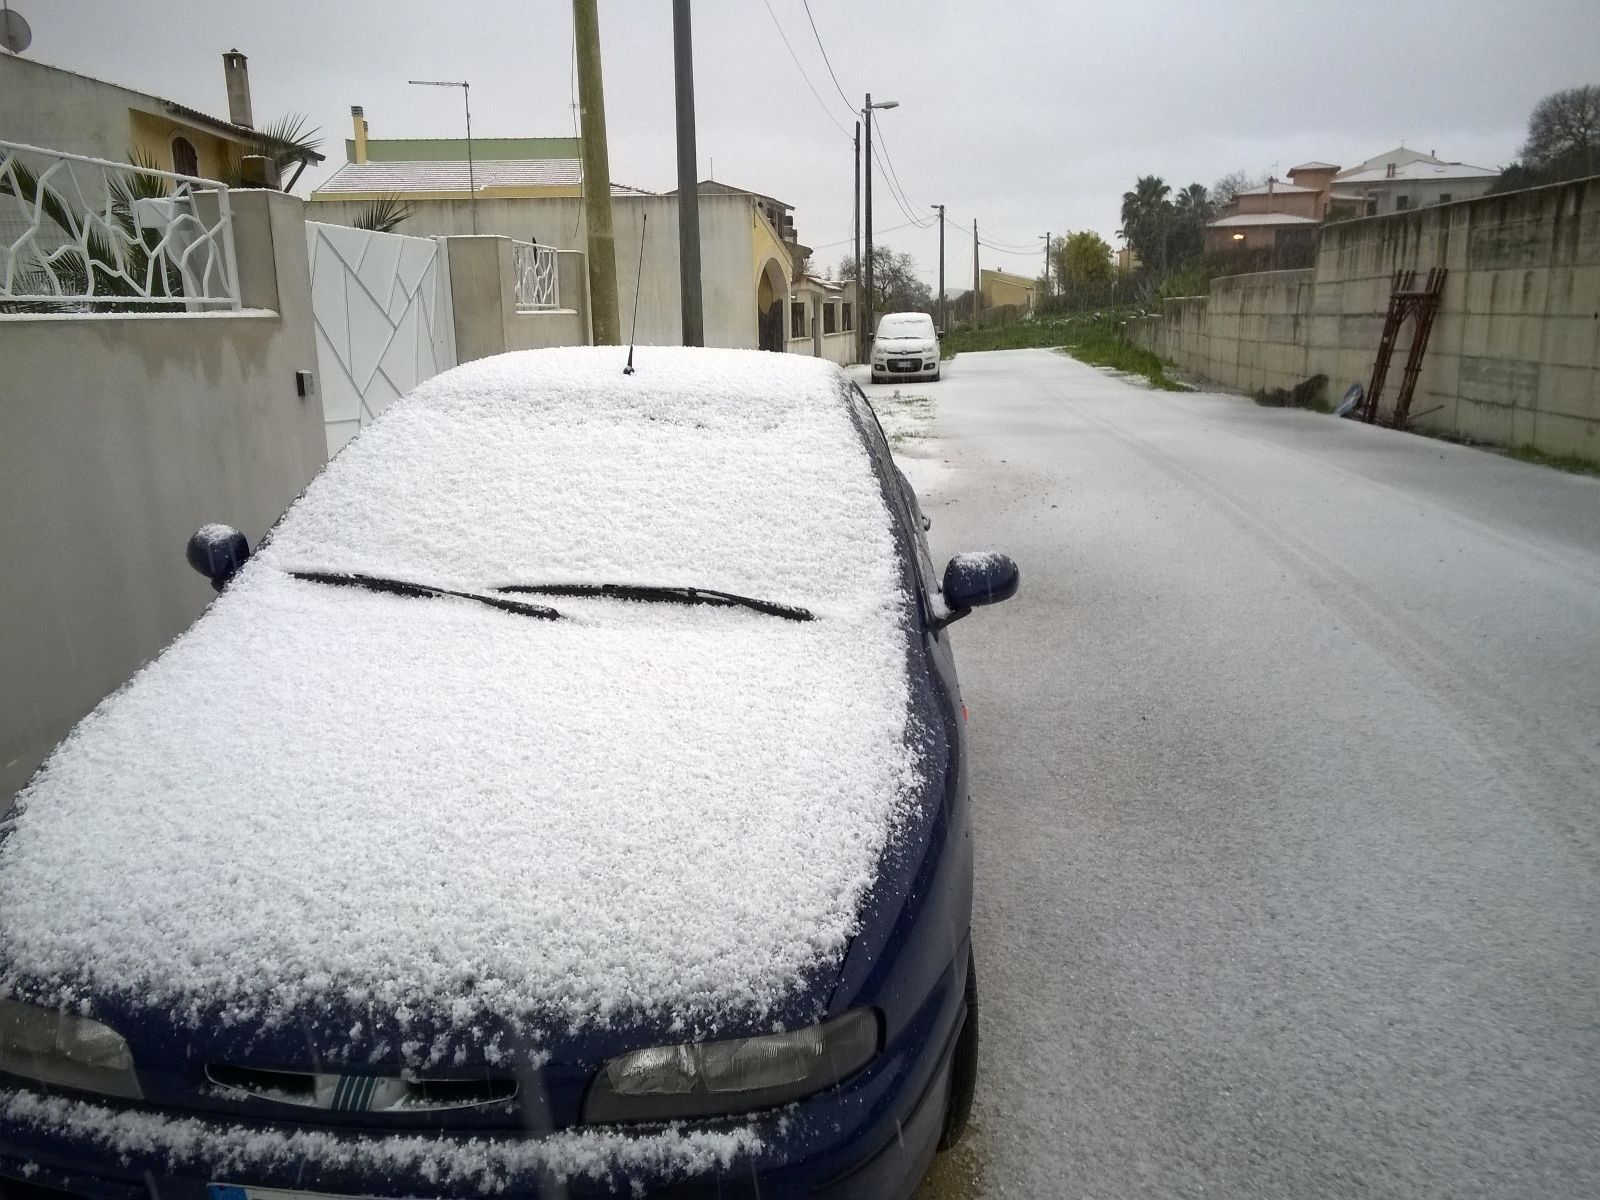 Ploaghe - Neve anche nel sassarese, su Ploaghe